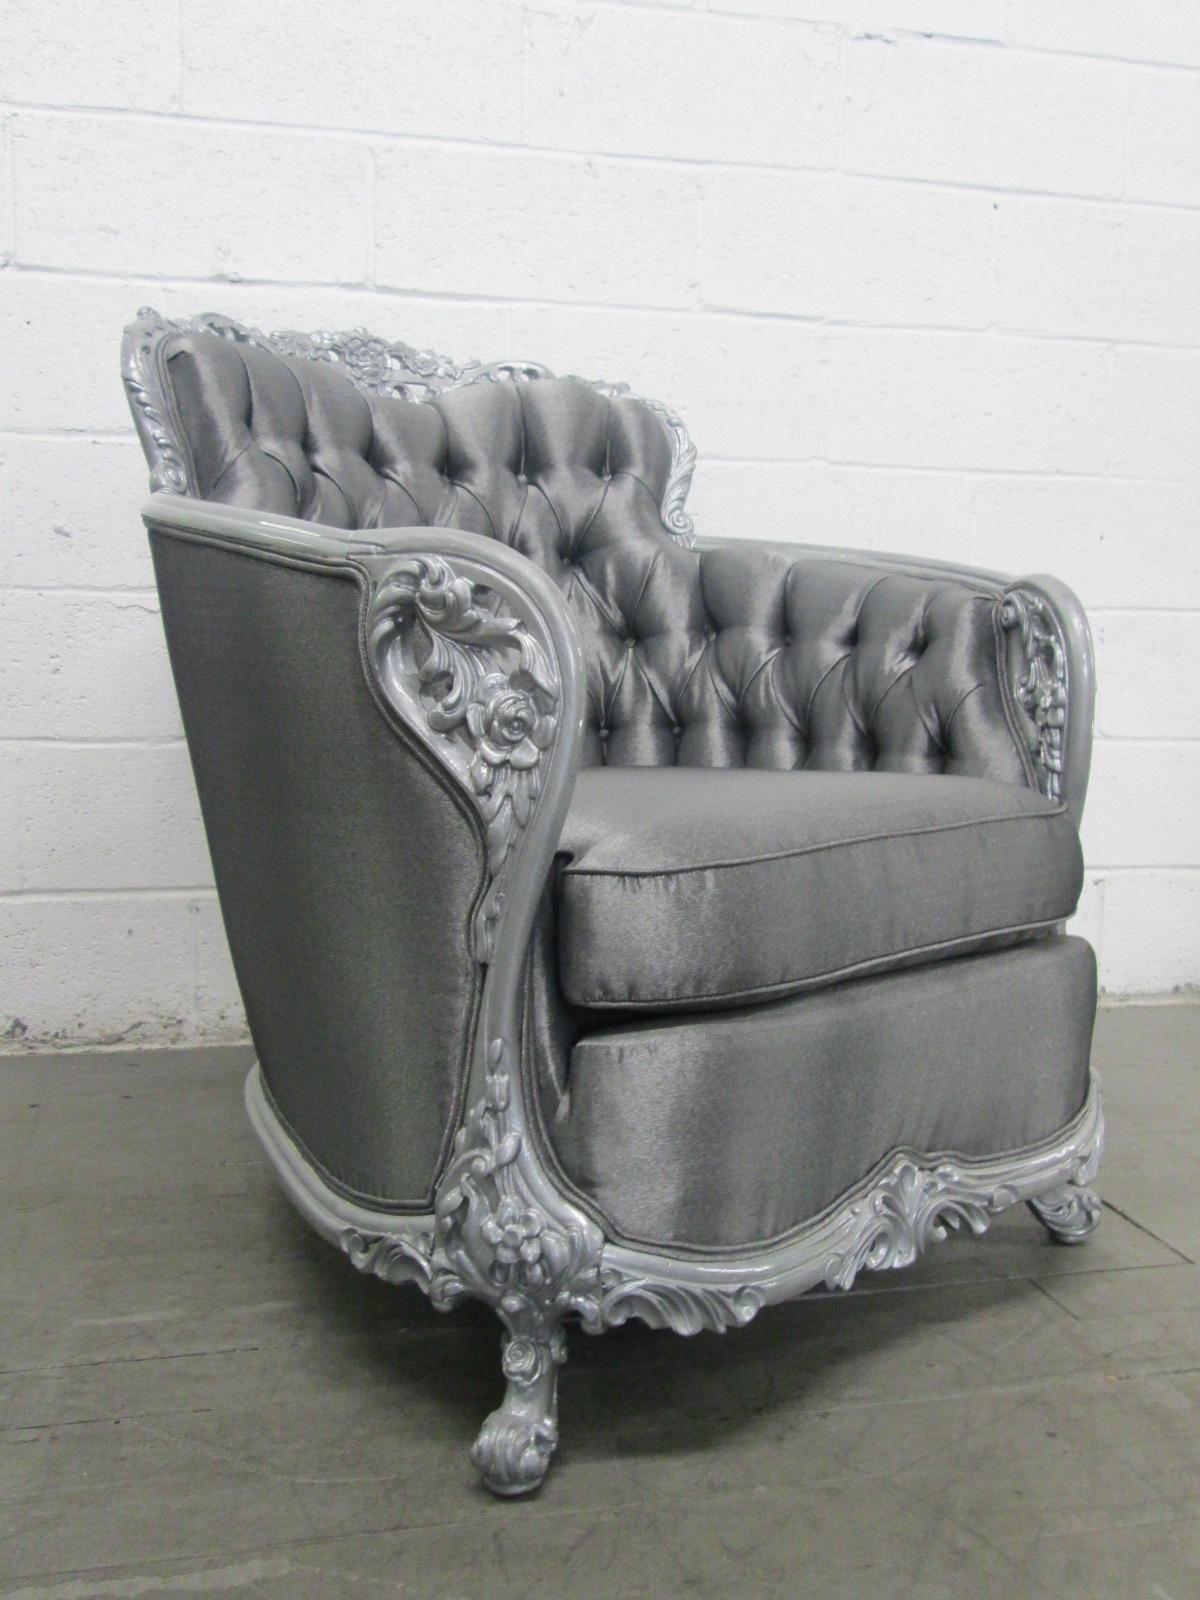 Magnifique chaise touffetée et sculptée de style ancien. Nouvellement revêtu d'un tissu aux reflets gris argenté. Le cadre est peint en argent foncé.